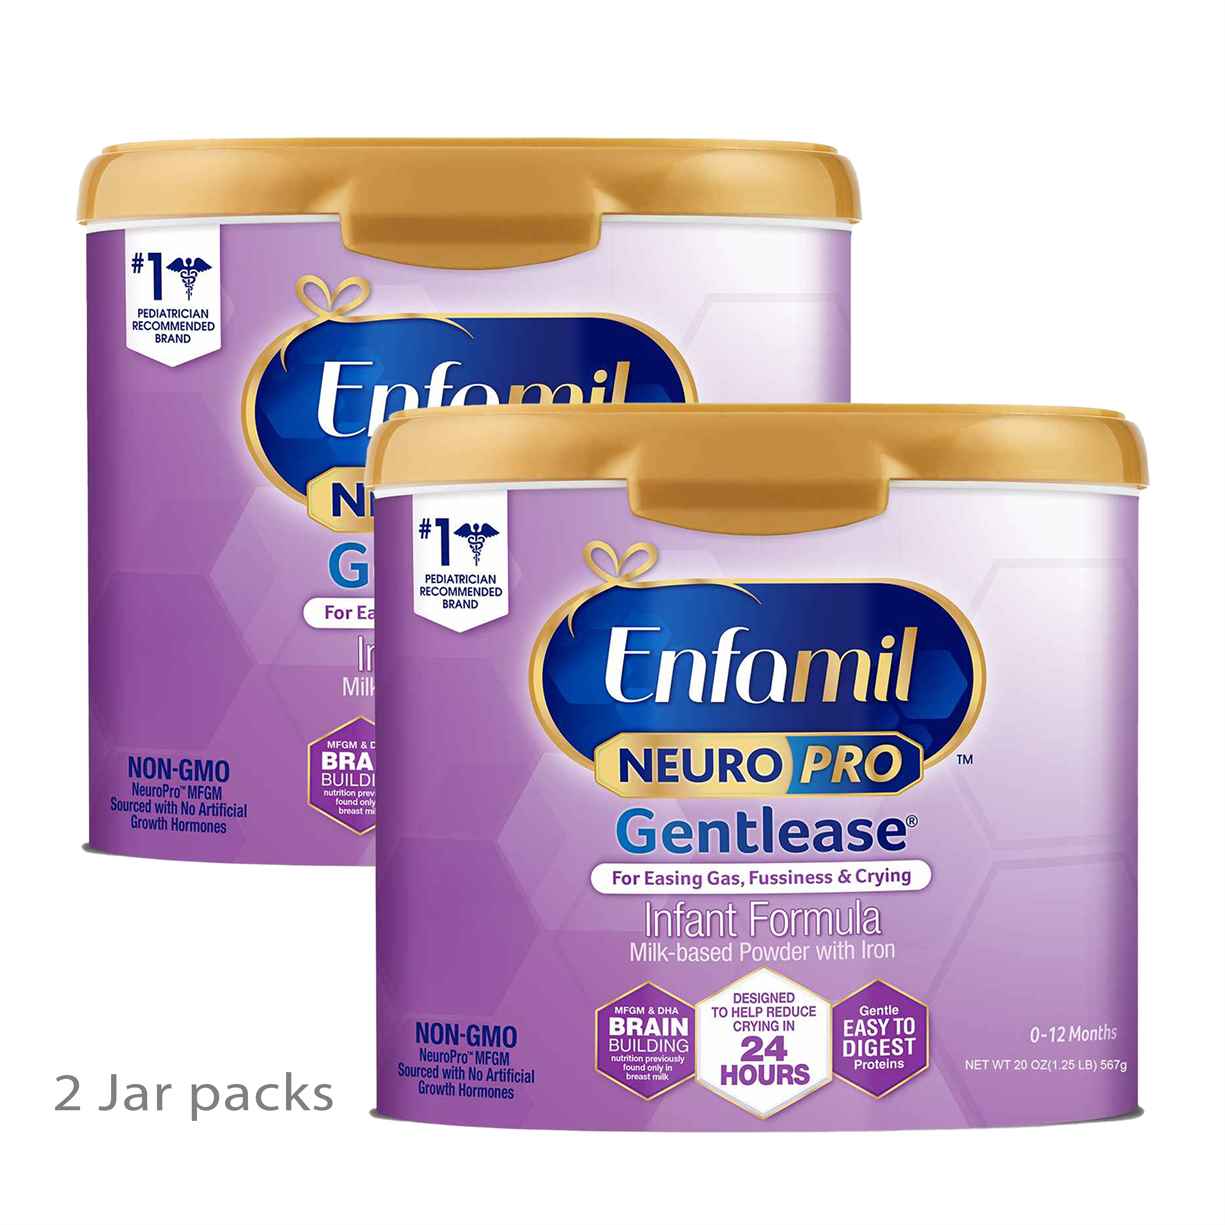 Buy Enfamil Neuro Pro Gentlease Infant Baby Milk Formula - 1.13kg Online in India at uyyaala.com